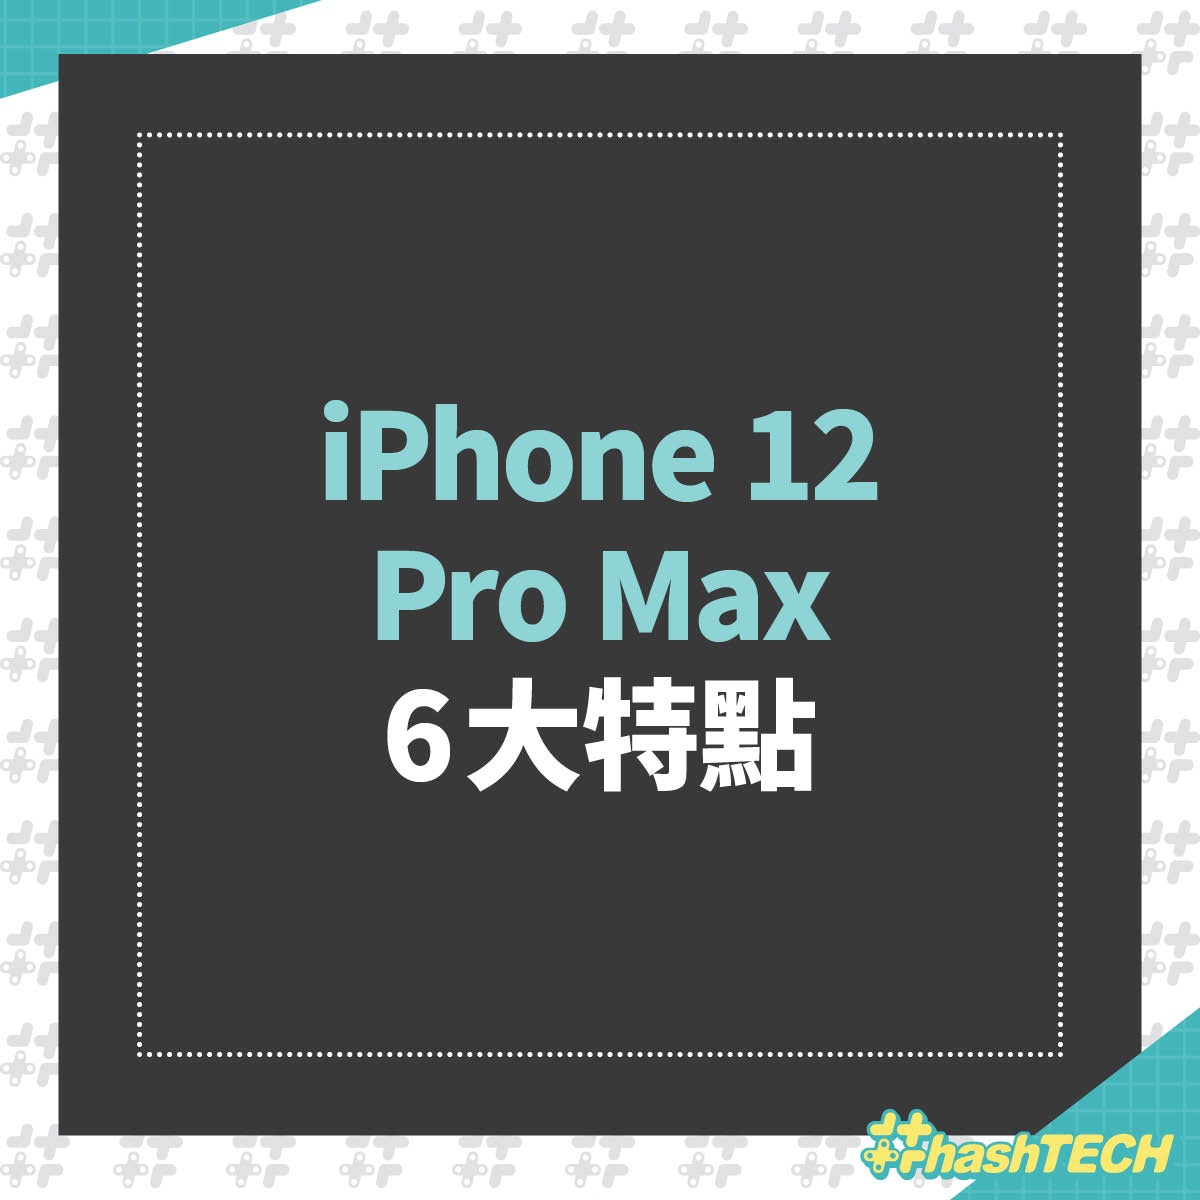 蘋果認證iphone 12用家靚相人像 風景 夜空 17幅可做ｗallpaper 香港01 數碼生活